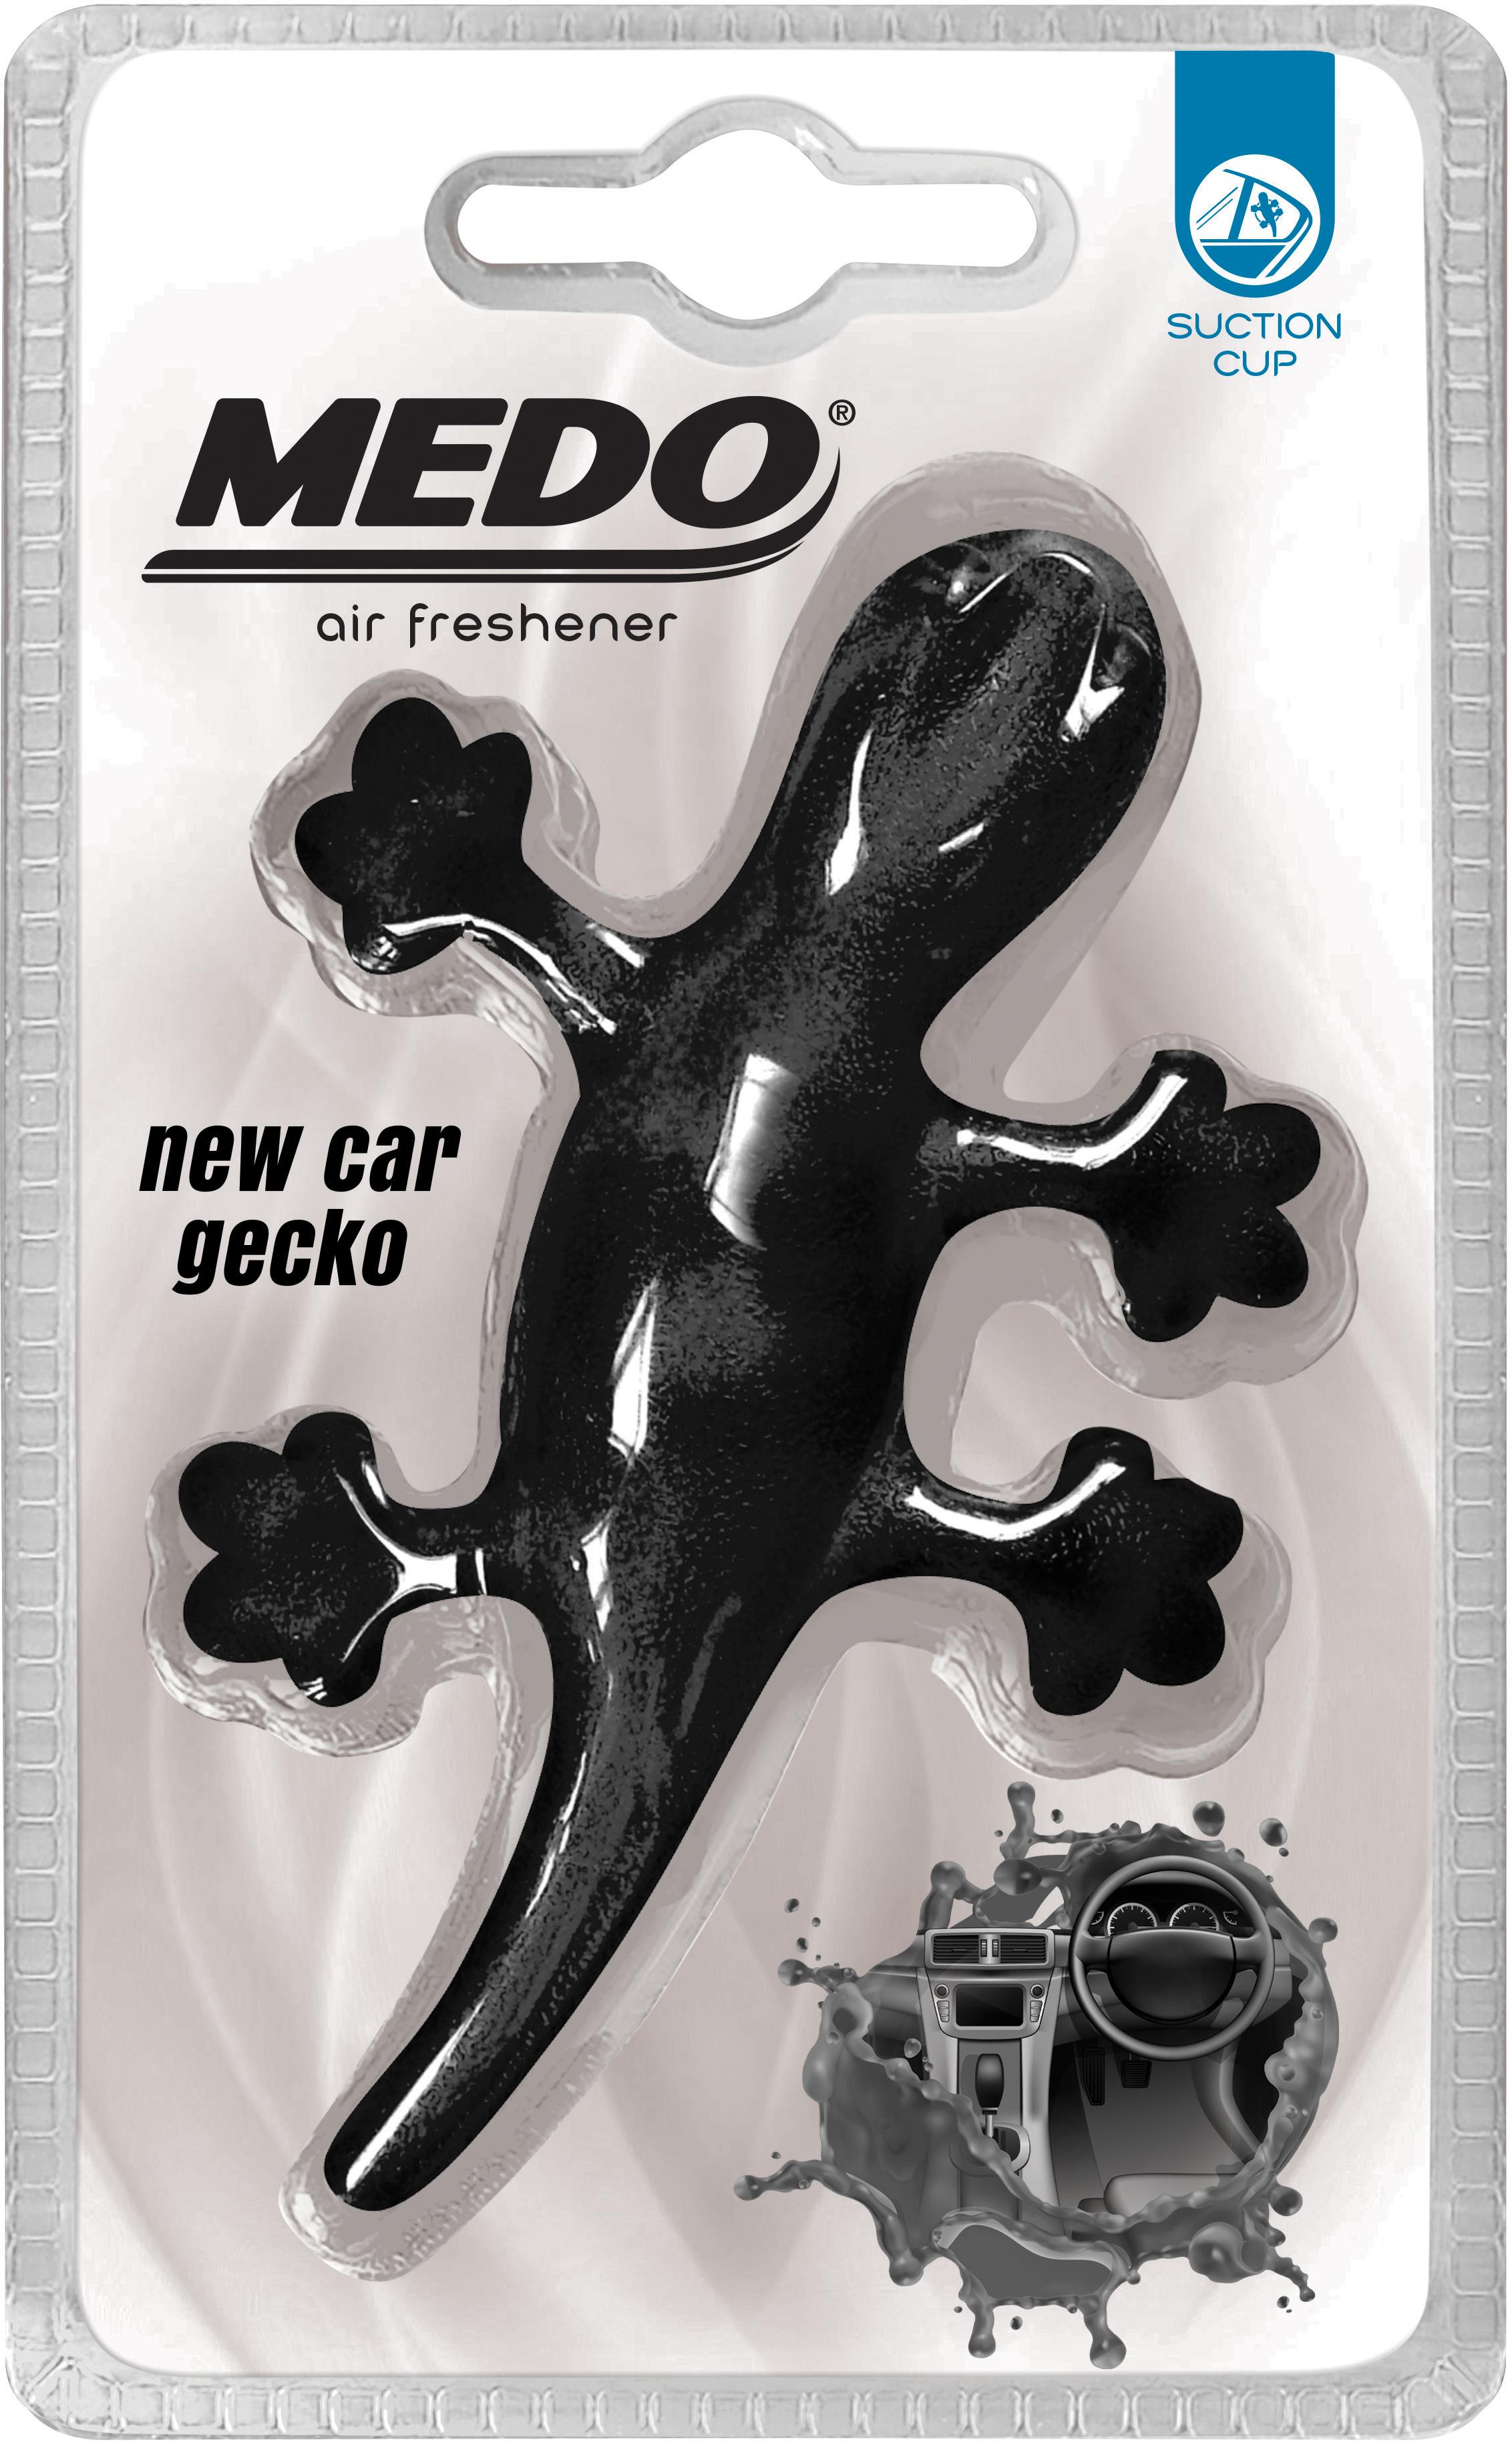 Medo Gecko Black New Car Air Freshener